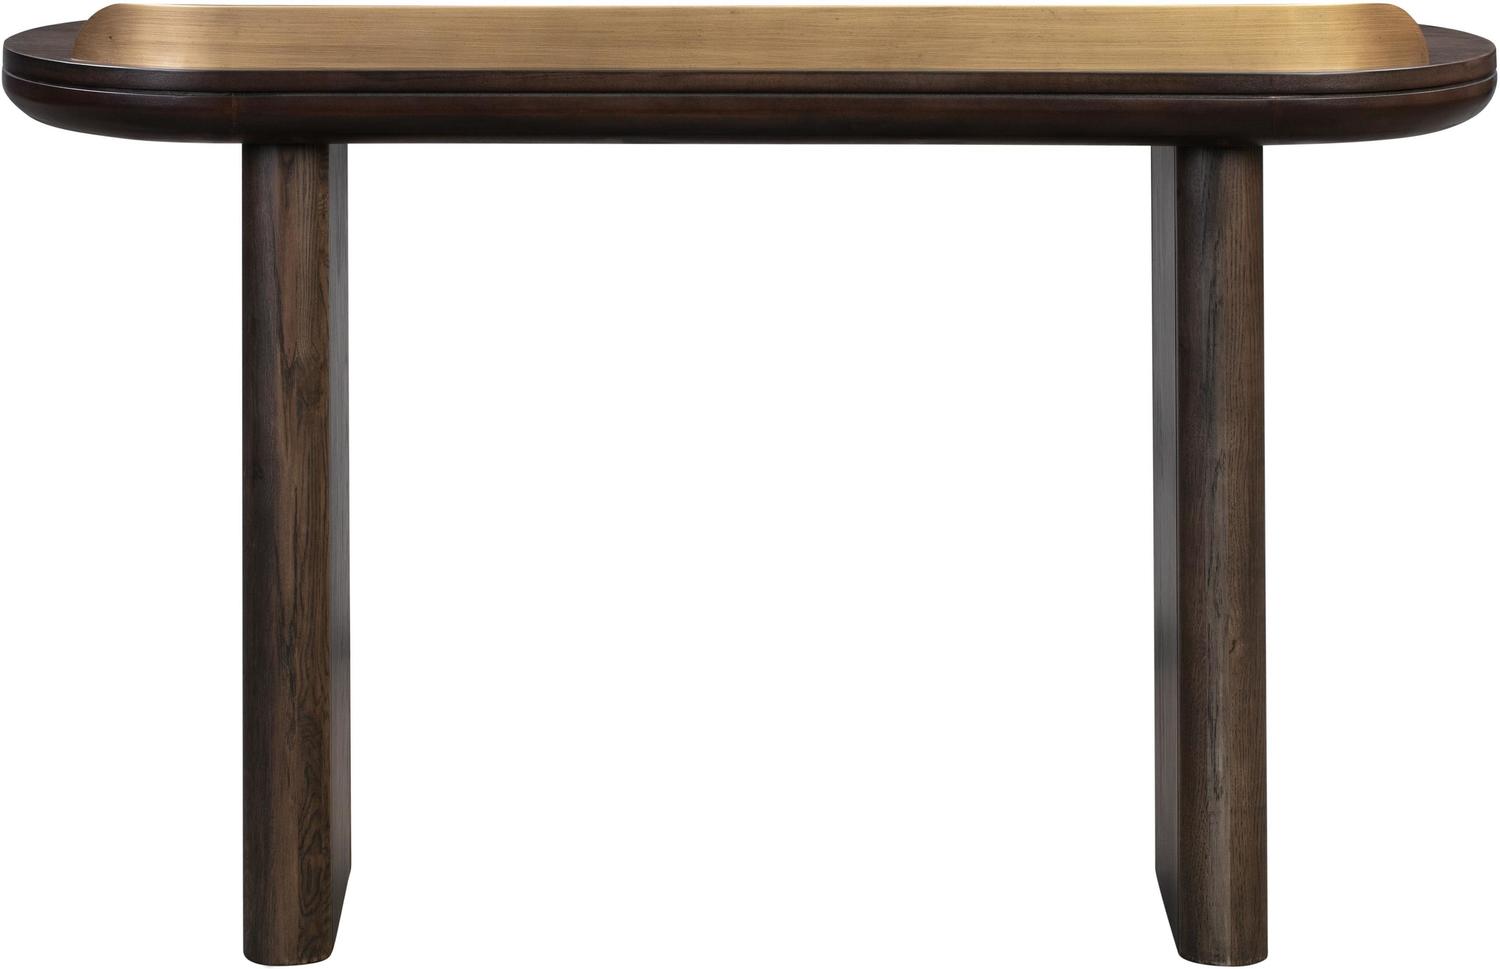 home office desk set up Contemporary Design Furniture Desks Brown